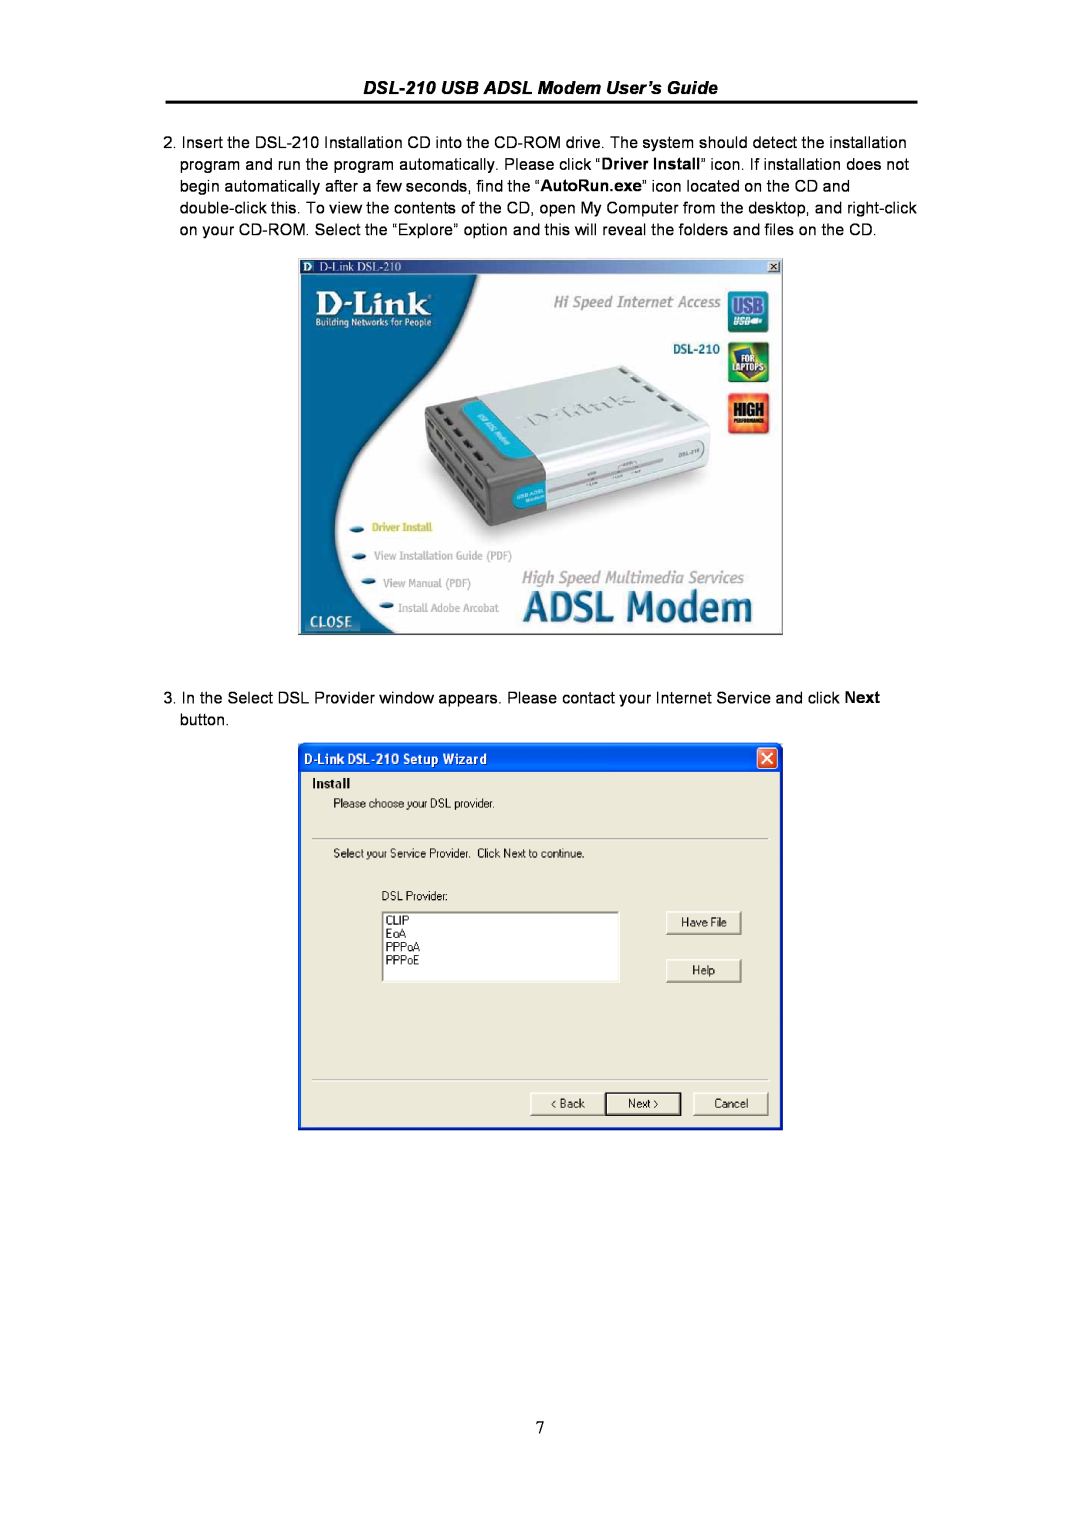 D-Link manual DSL-210 USB ADSL Modem User’s Guide 